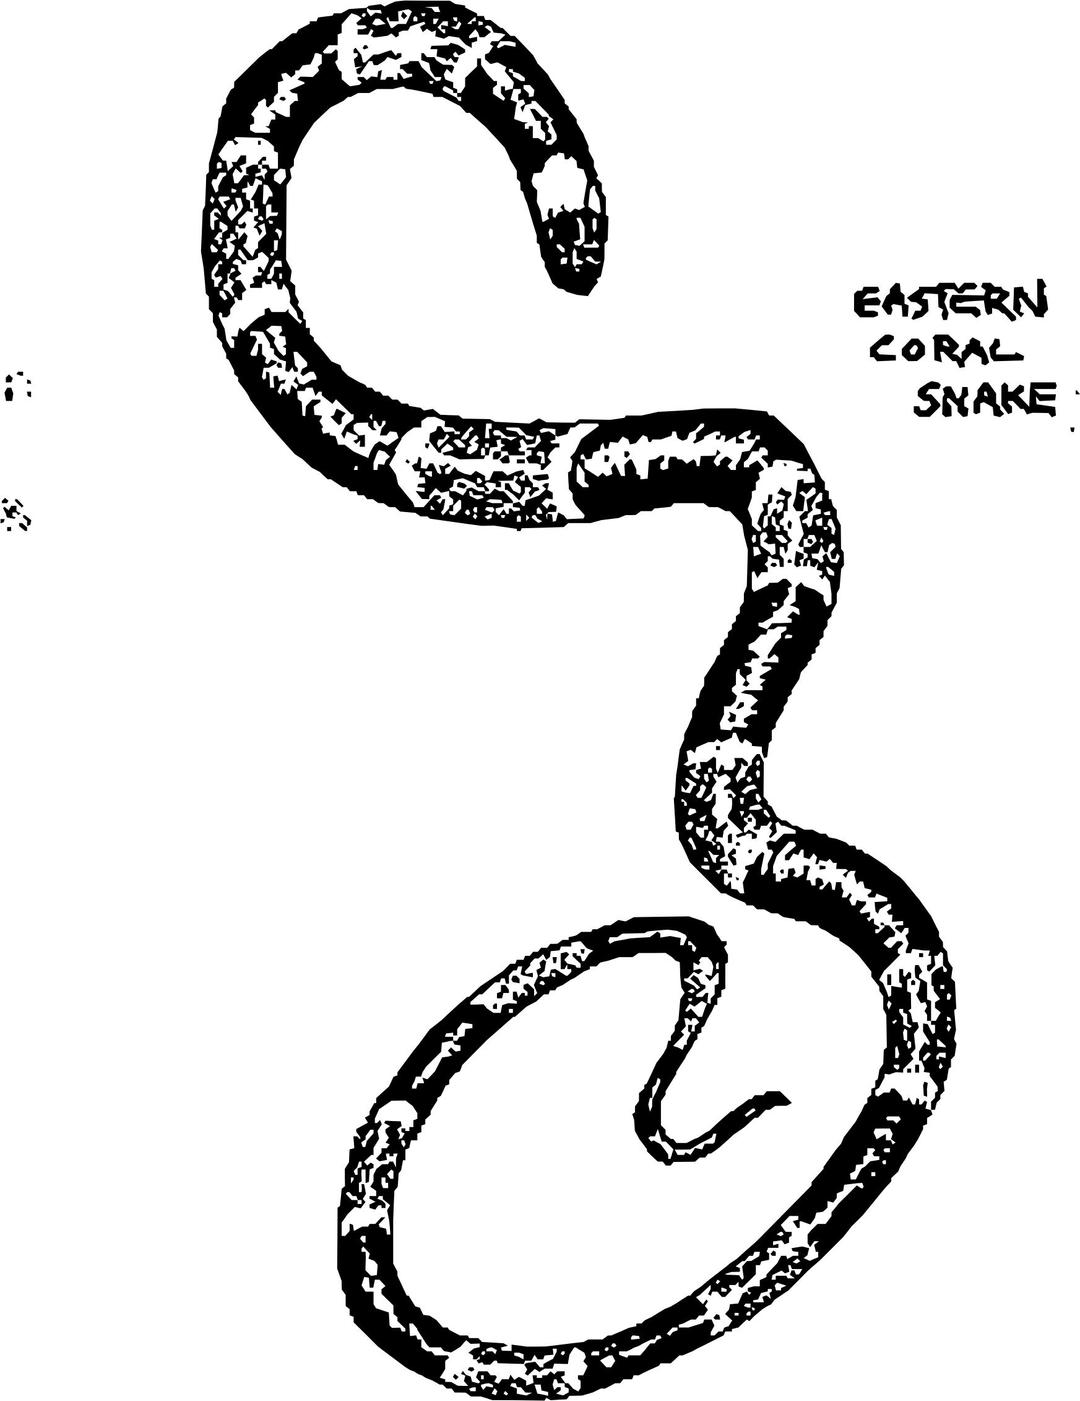 Eastern Coral Snake png transparent